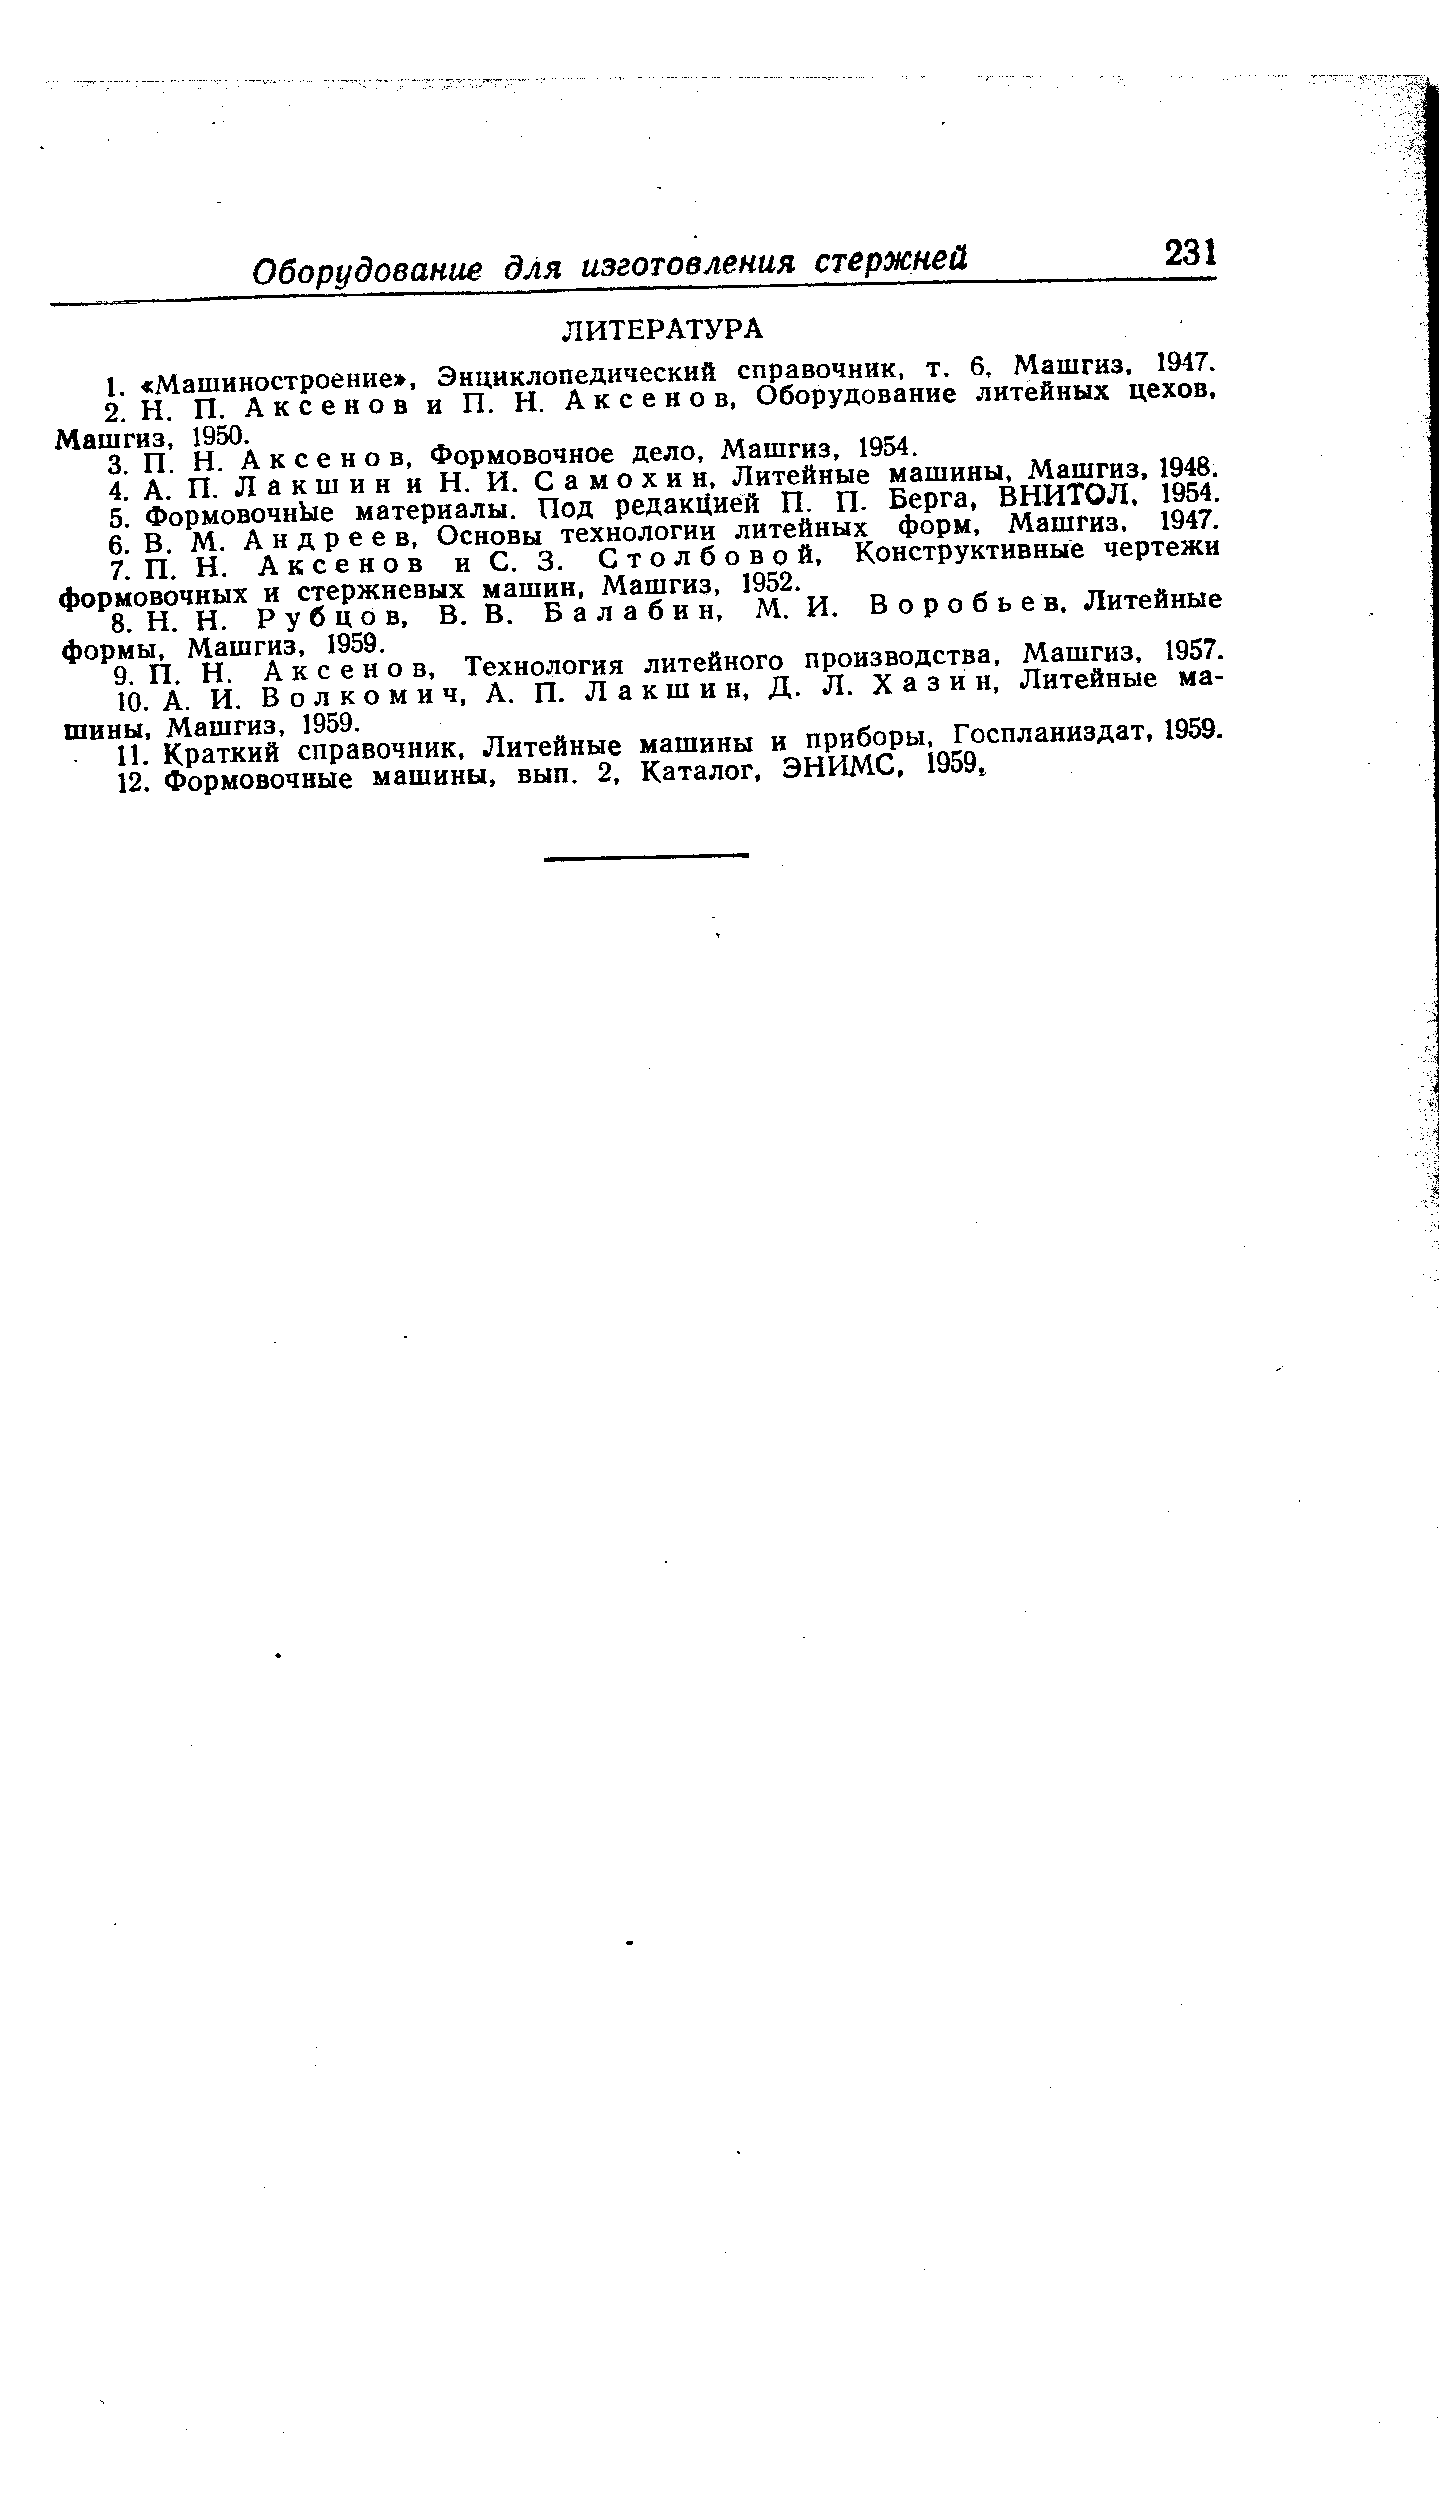 В о л к о м и ч, А. П. Лакшин, Д. Л. X а з и и. Литейные машины, Машгиз, 1959.
